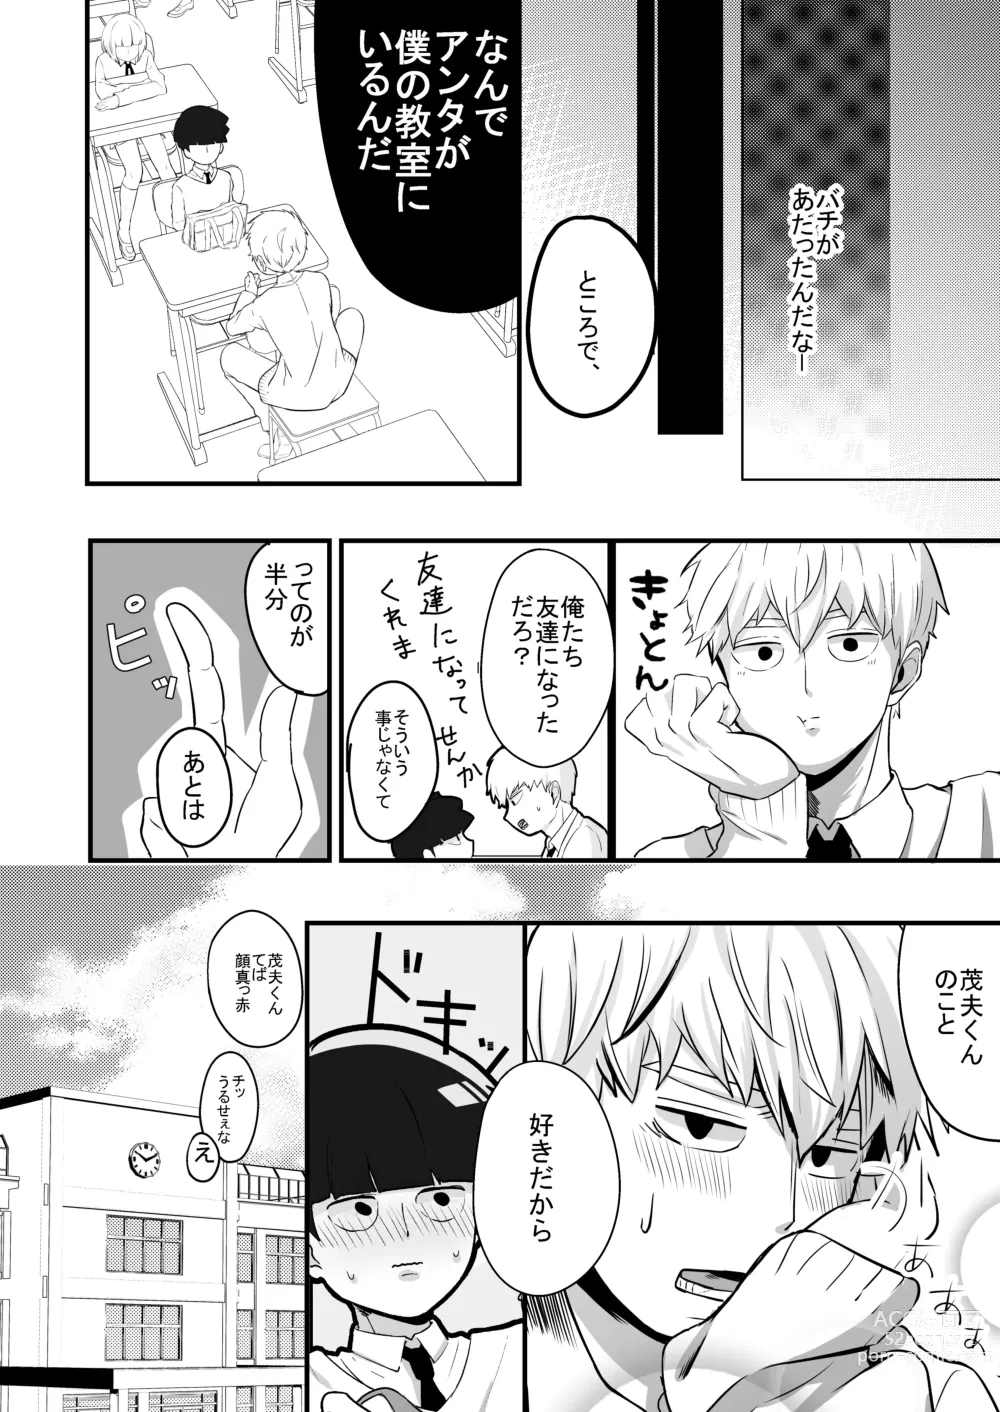 Page 14 of doujinshi Dearest love